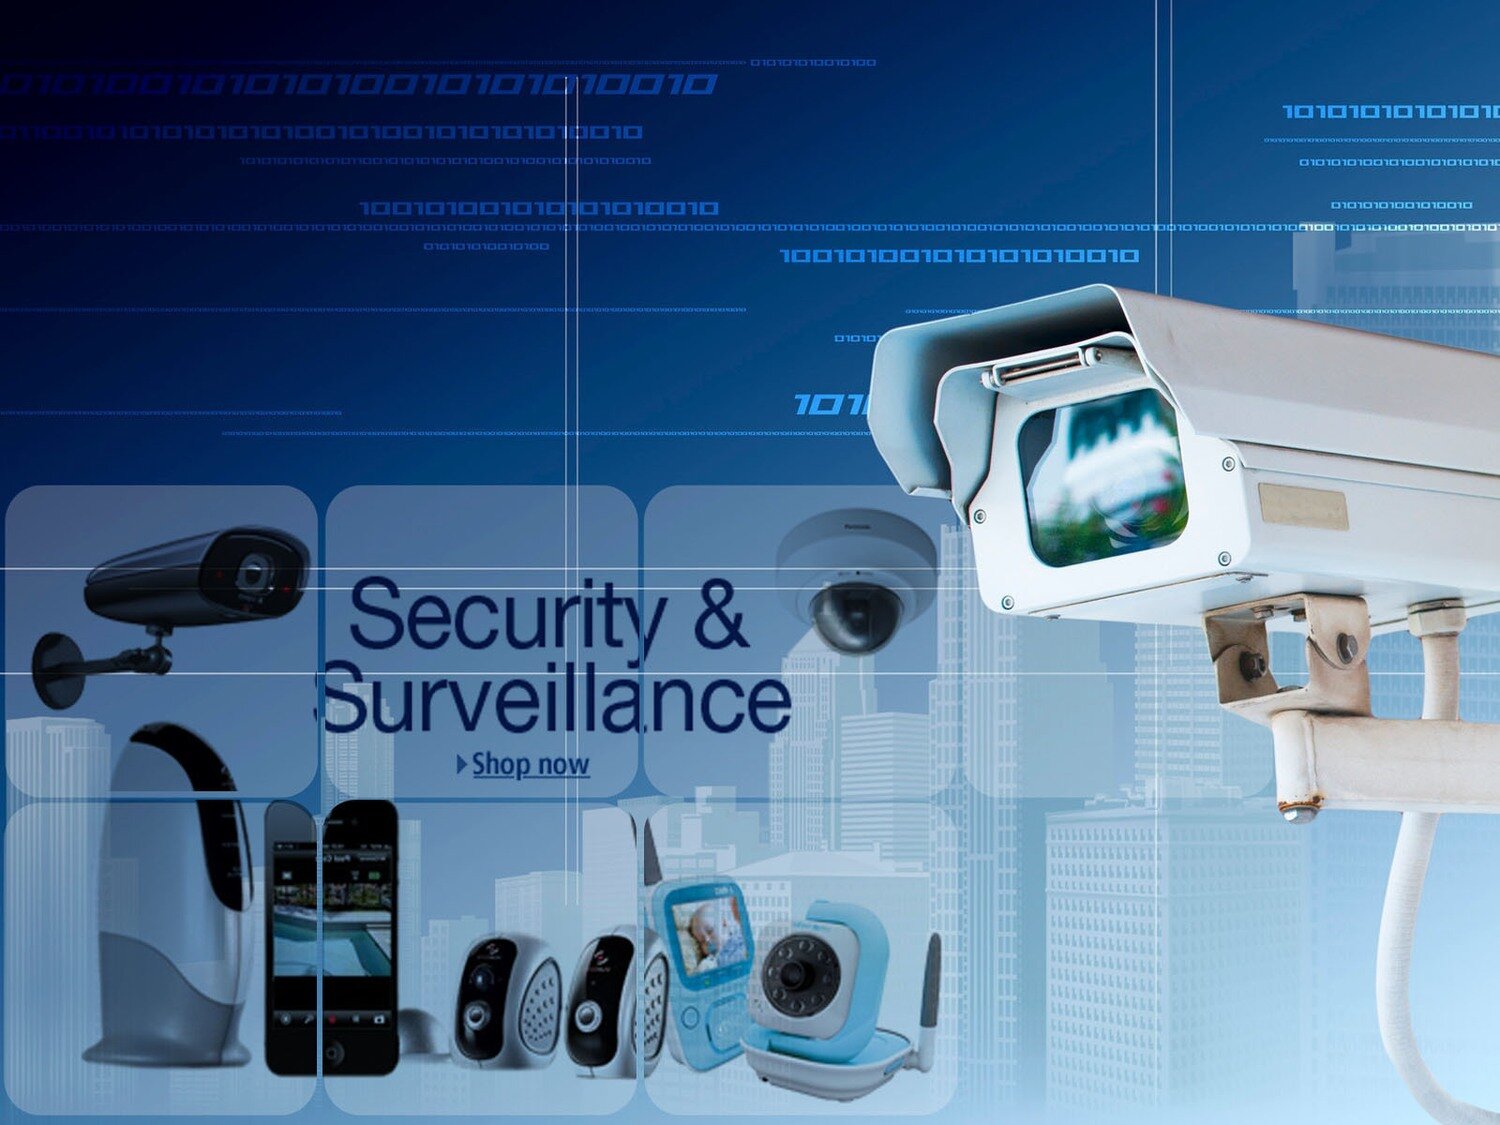 16-Channels Security Surveillance